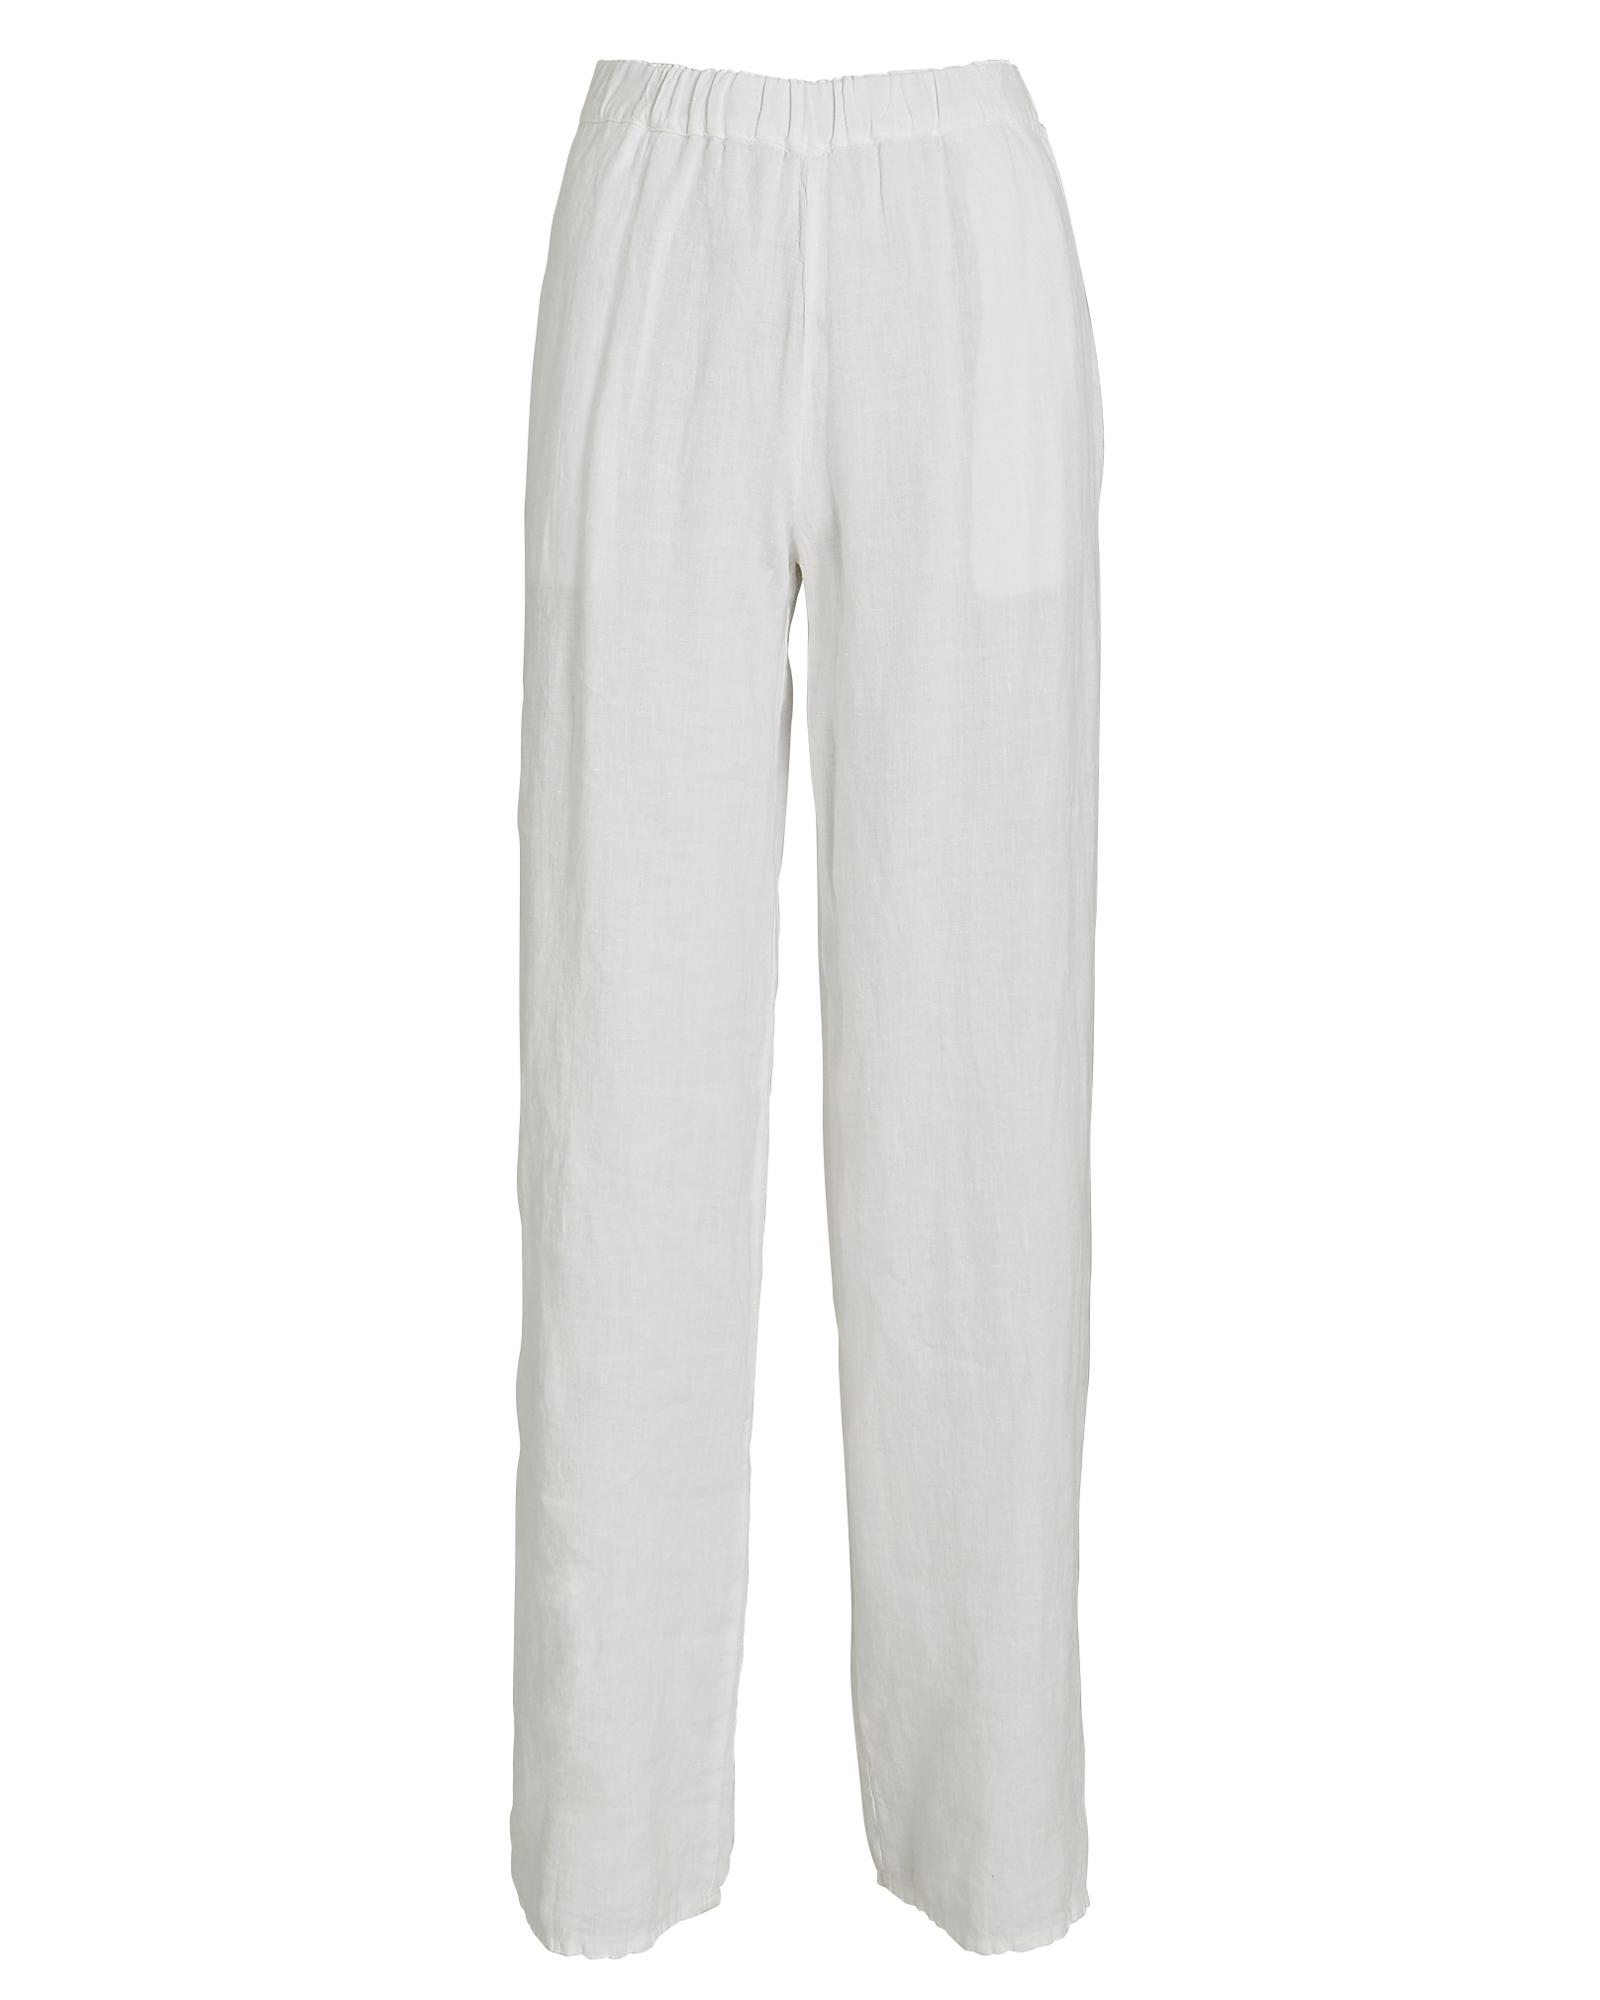 Honorine Mia Crinkled Linen Wide-leg Pants in White | Lyst